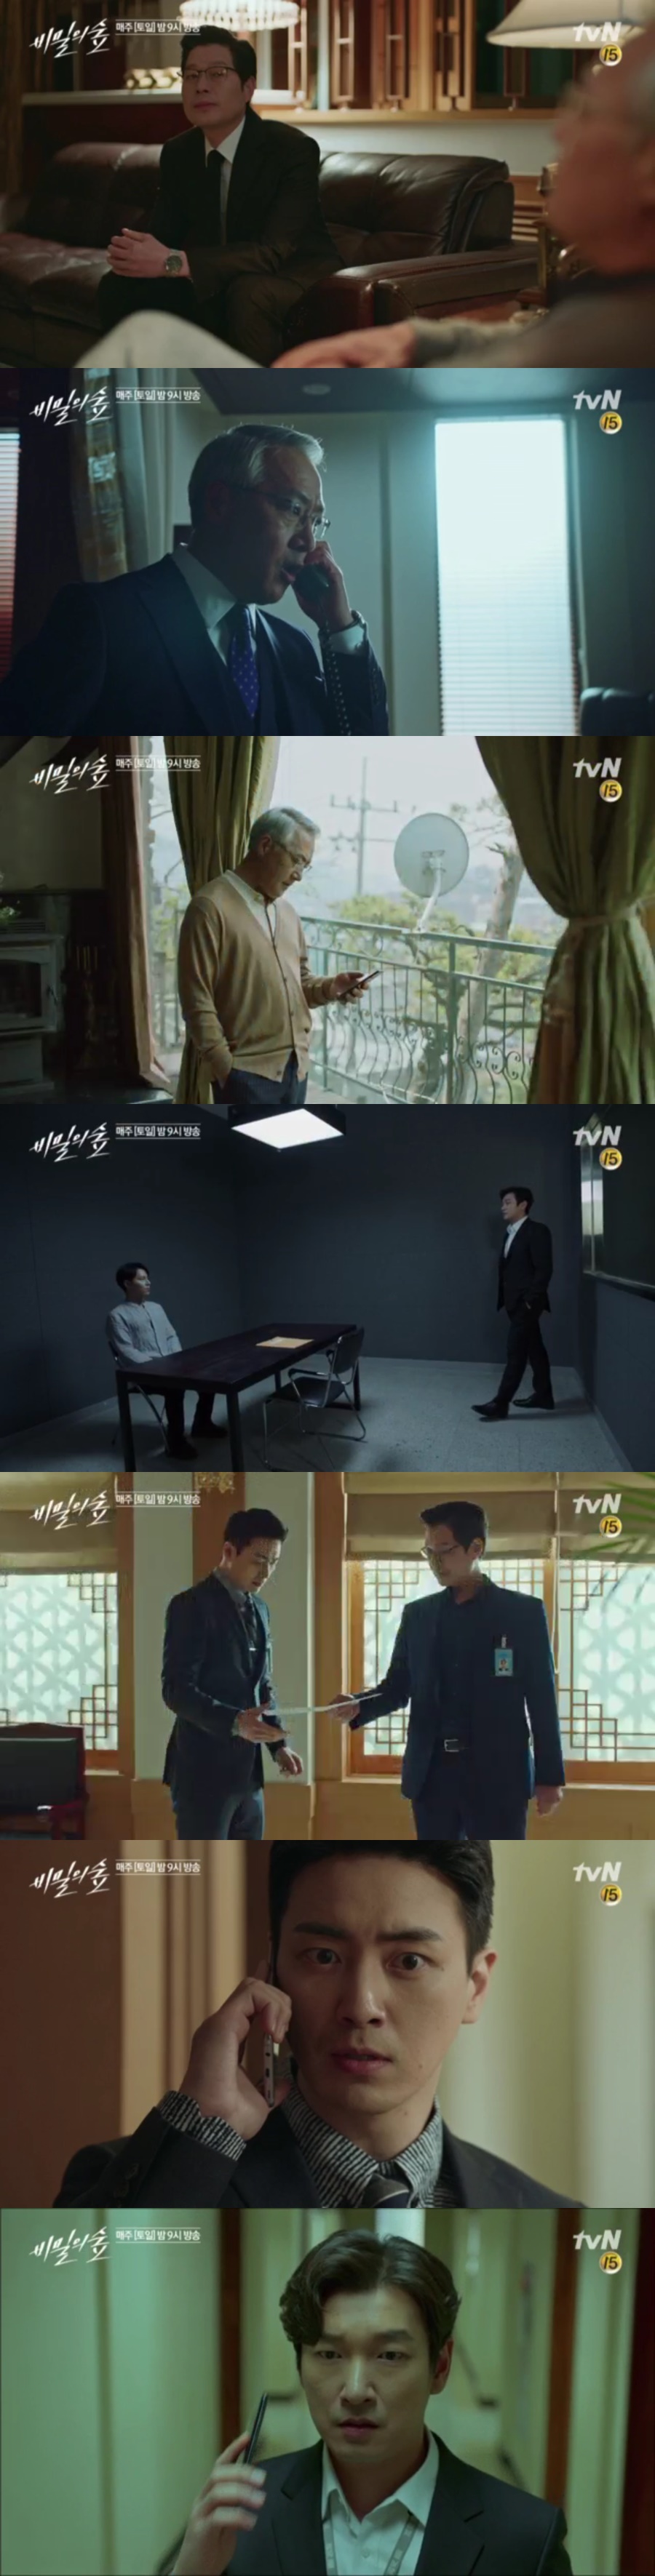 사진: tvN '비밀의 숲' 15회 예고편 캡처